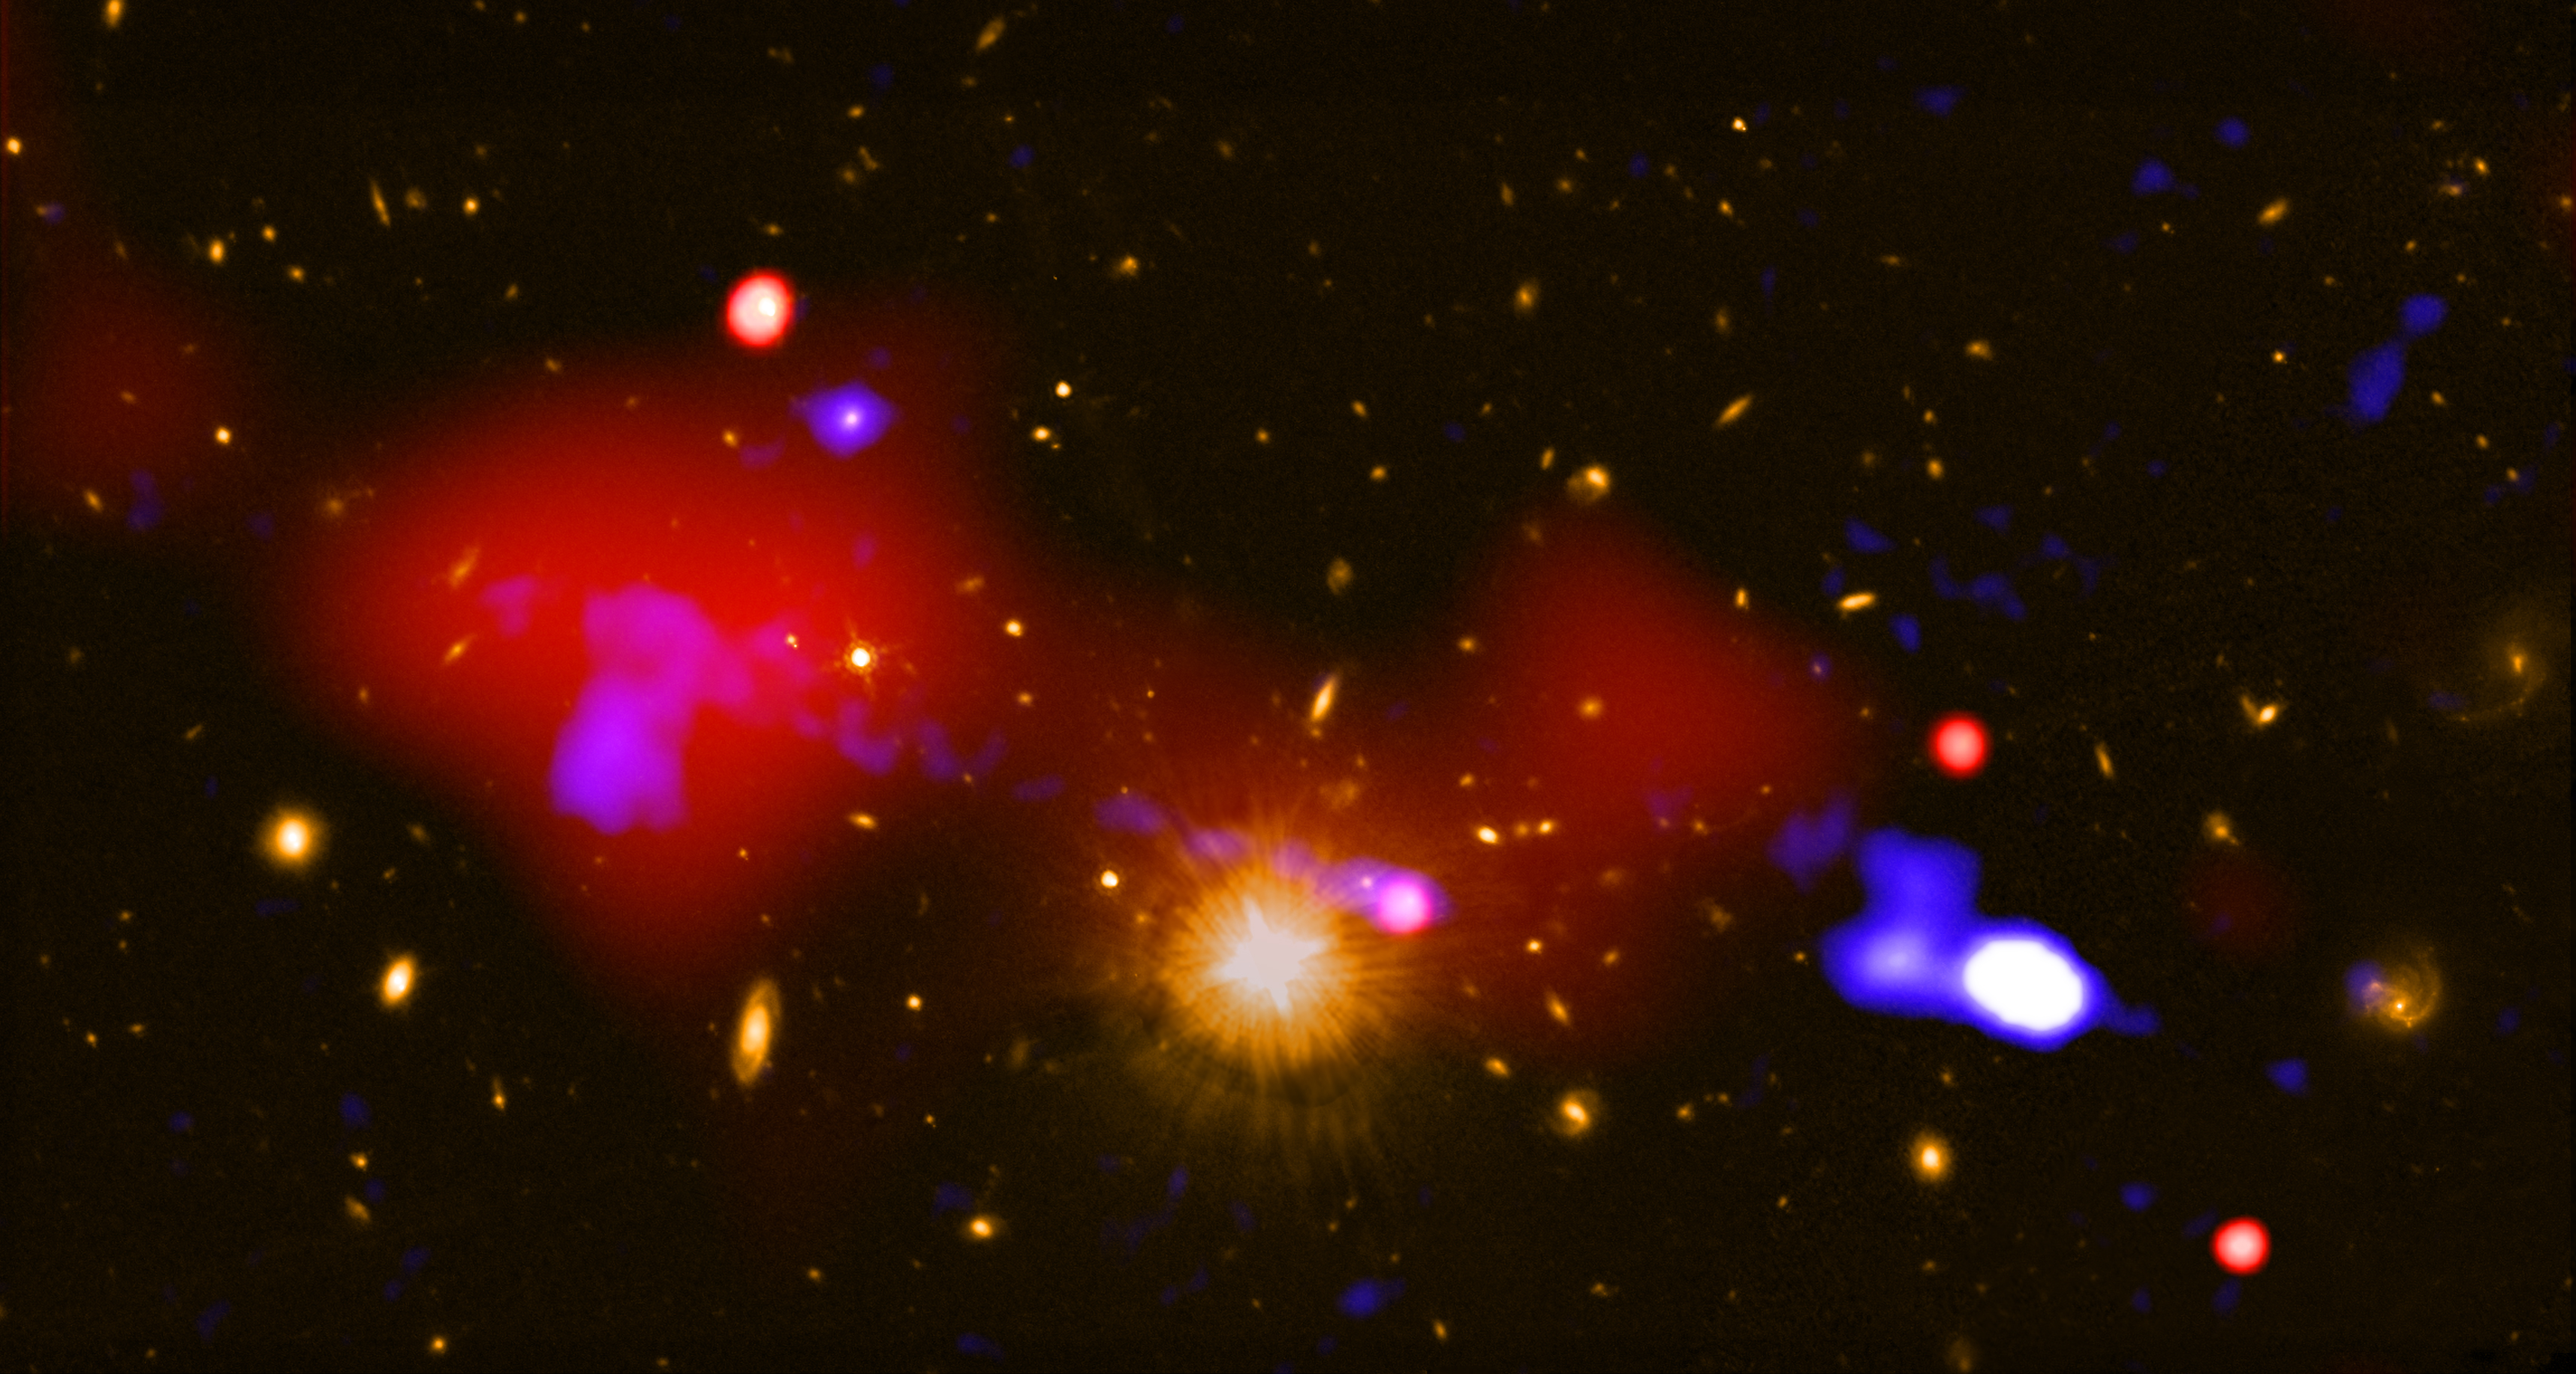 4 5 световых года. Черная дыра НАСА 2019. Снимок черной дыры NASA. Центр Галактики. Сверхмассивные звезды фото.